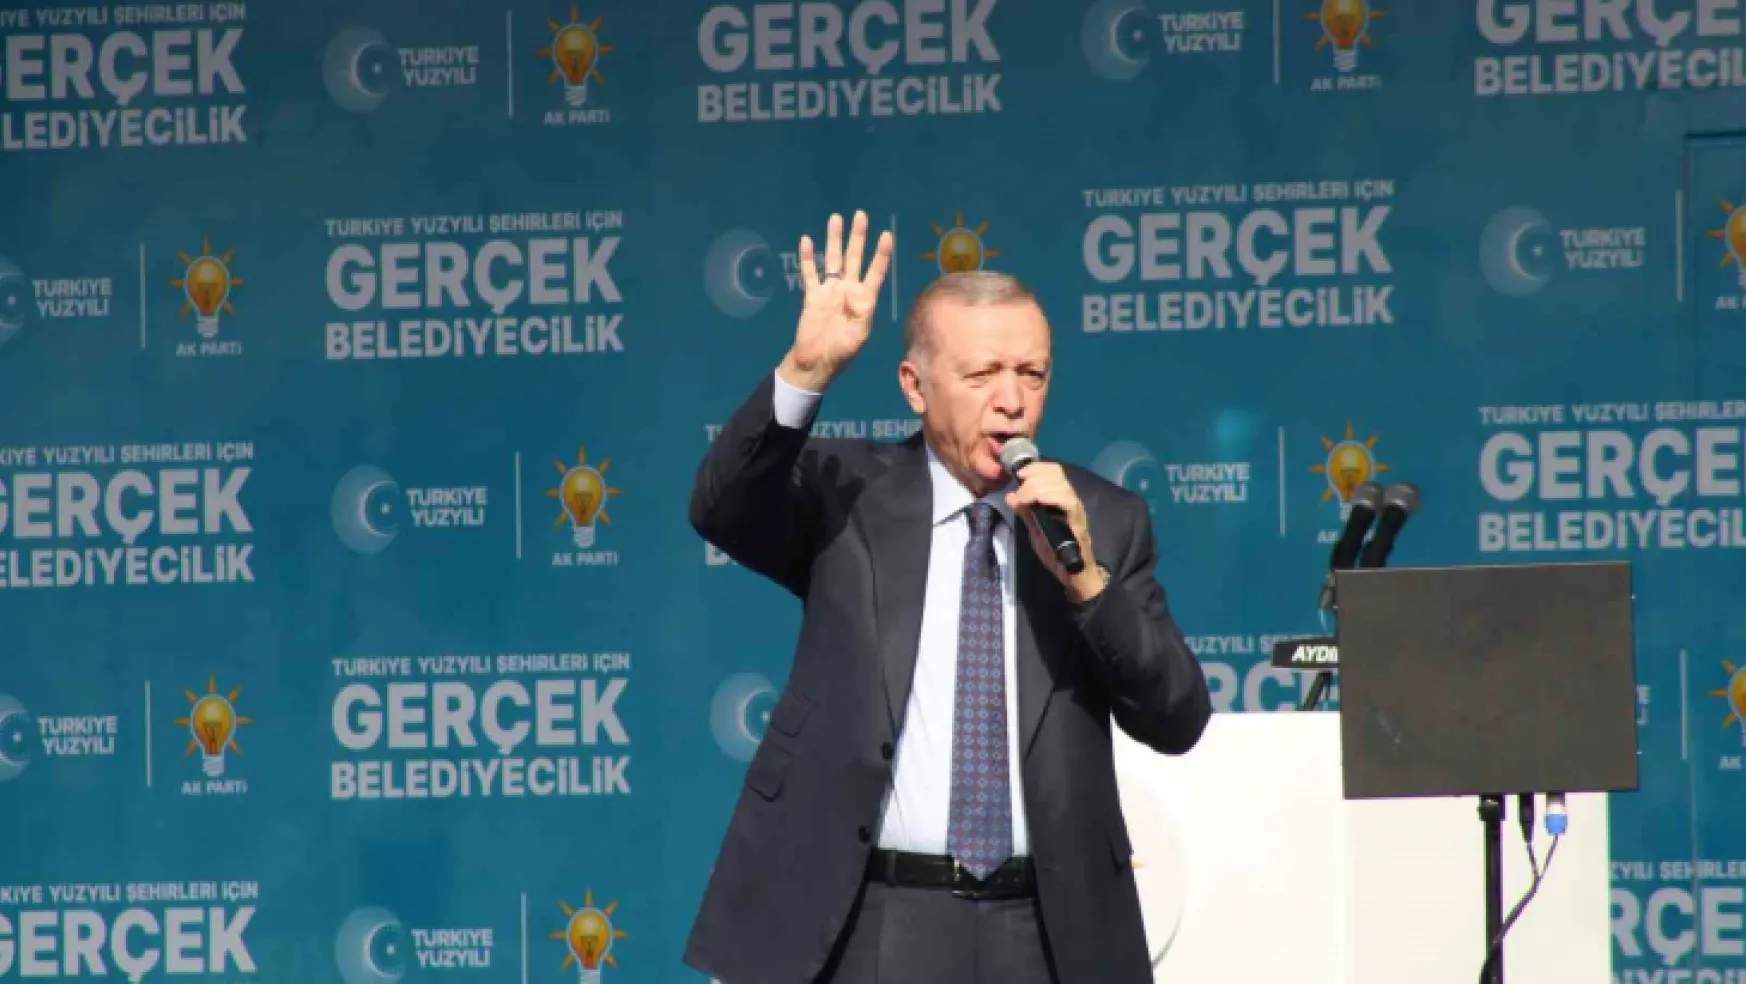 Erdoğan: Belediyecilikte bizimle yarışacak kimse yok